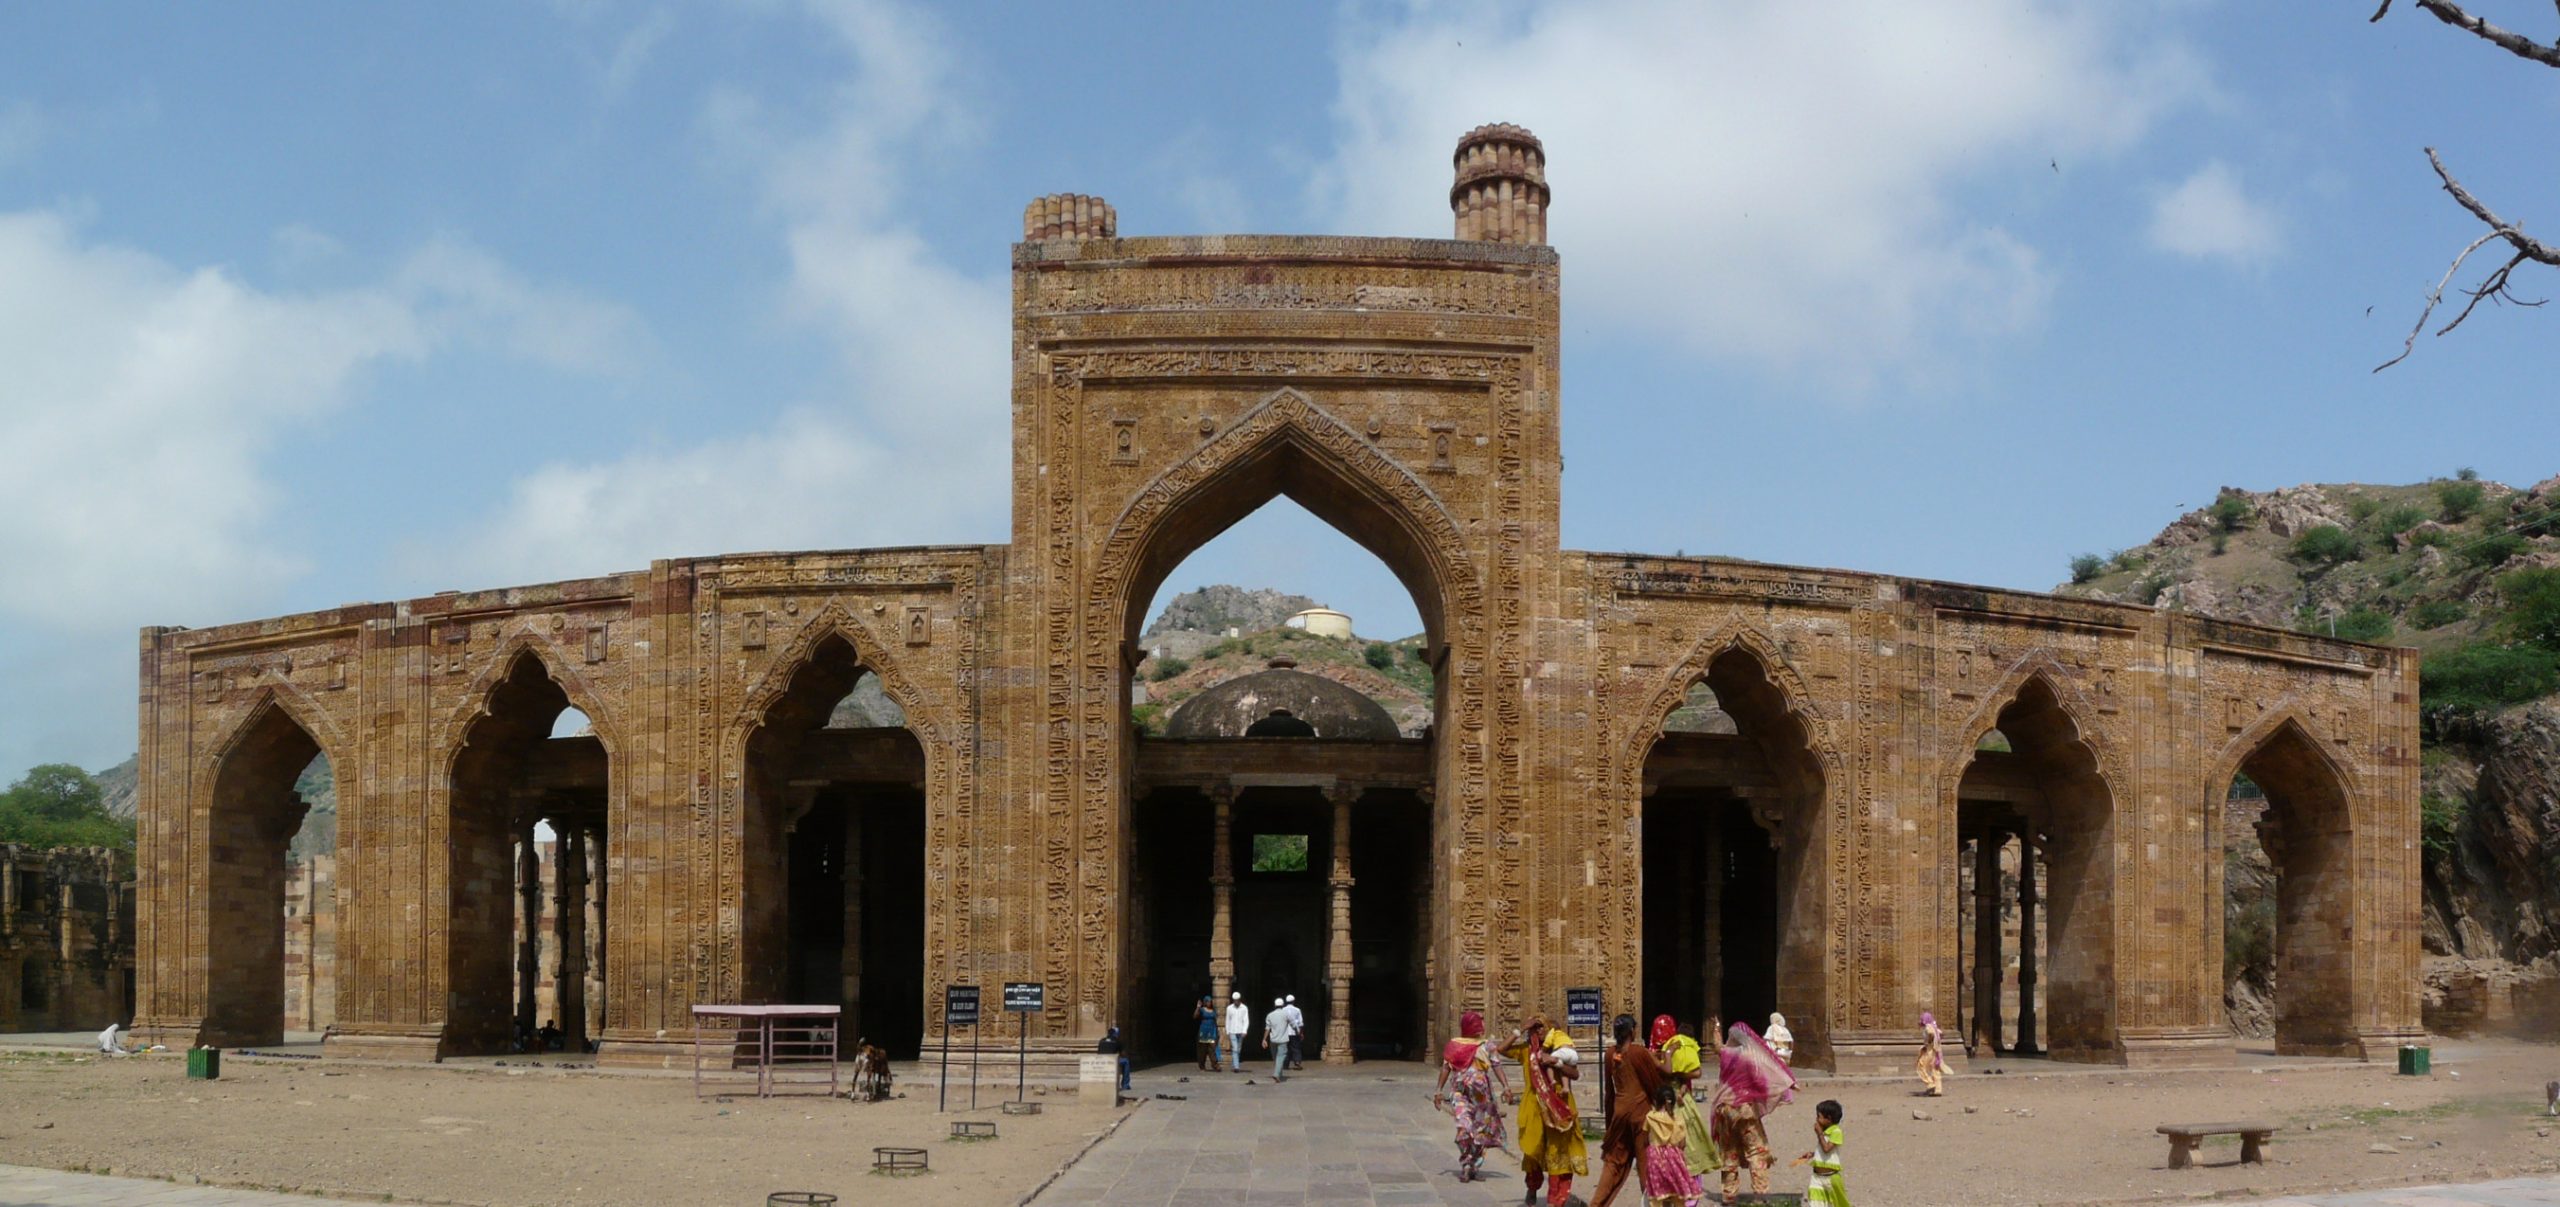 800 साल पुराना झोपड़ा: मस्जिद से जुड़े हैं तार, जाने संस्कृत से है क्या सम्बन्ध